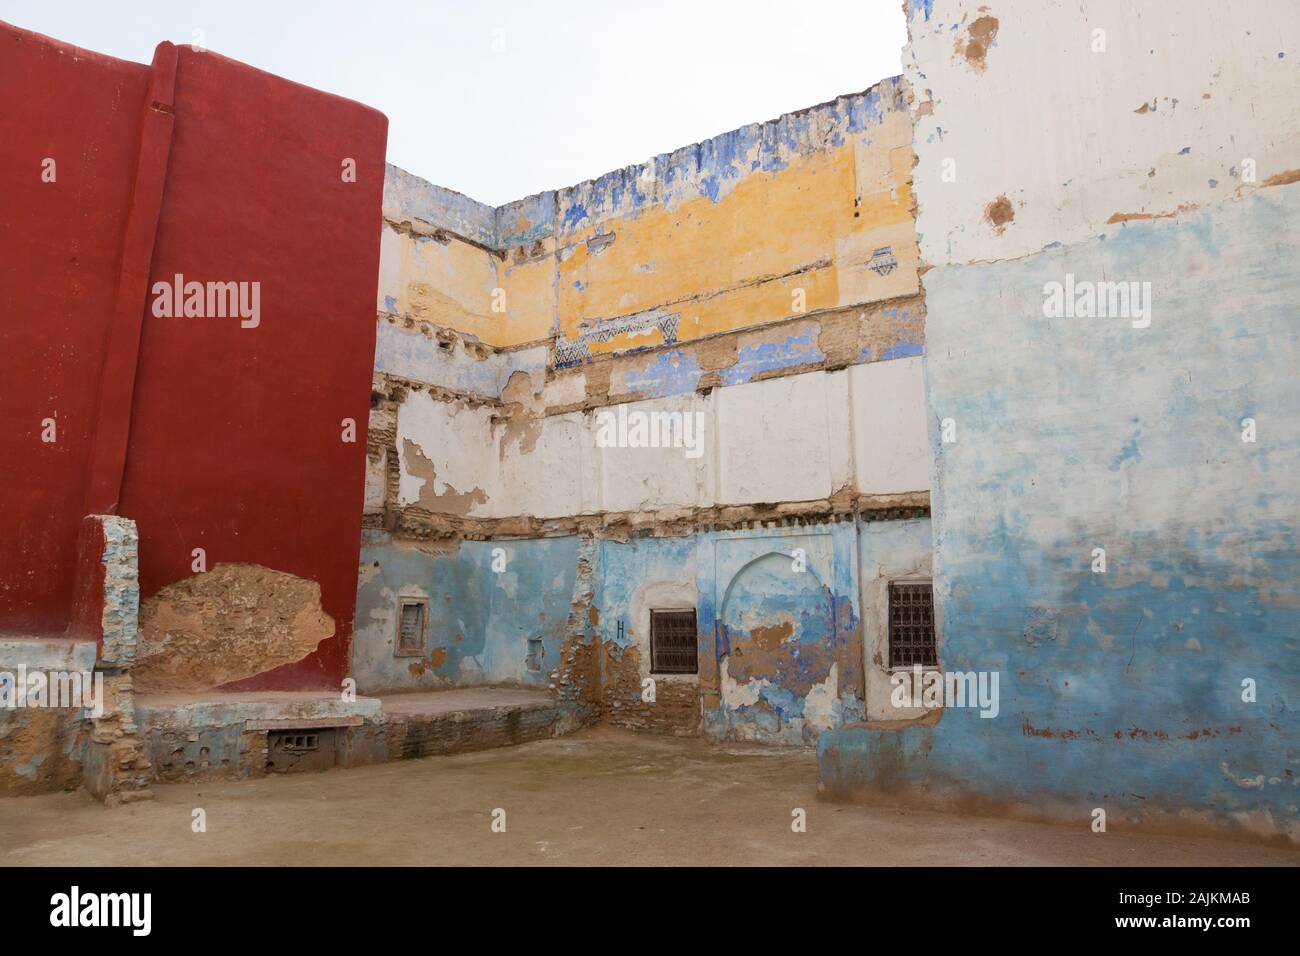 Bâtiments colorés à Fes (également connu sous le nom de Fez) avec quelques plâtre tombant des murs, Maroc Banque D'Images